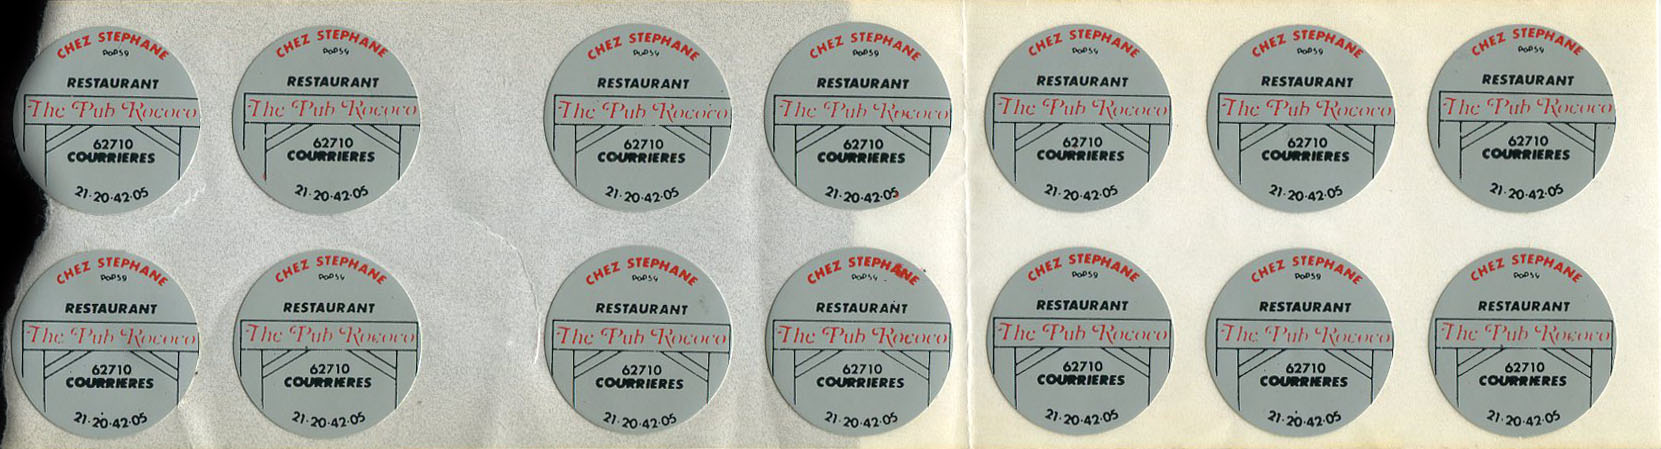 Fragment de feuille d'impression portant 14 autocollants Chez Stéphane - Restaurant - The Pub Rococo - 62710 Courrières - 21.20.42.05